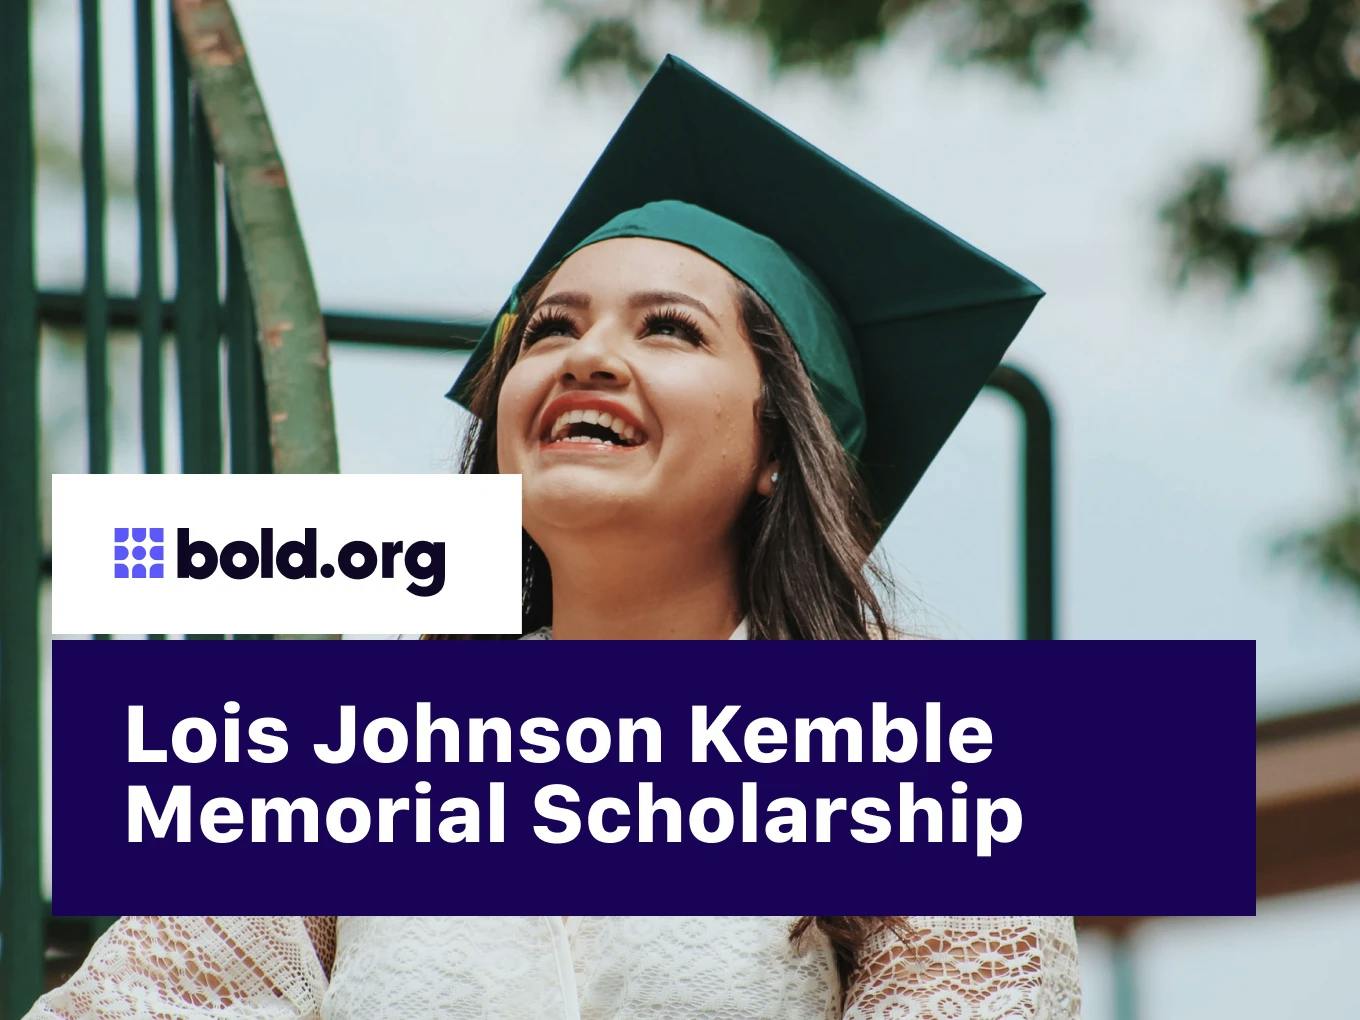 The Lois Johnson Kemble Memorial Scholarship